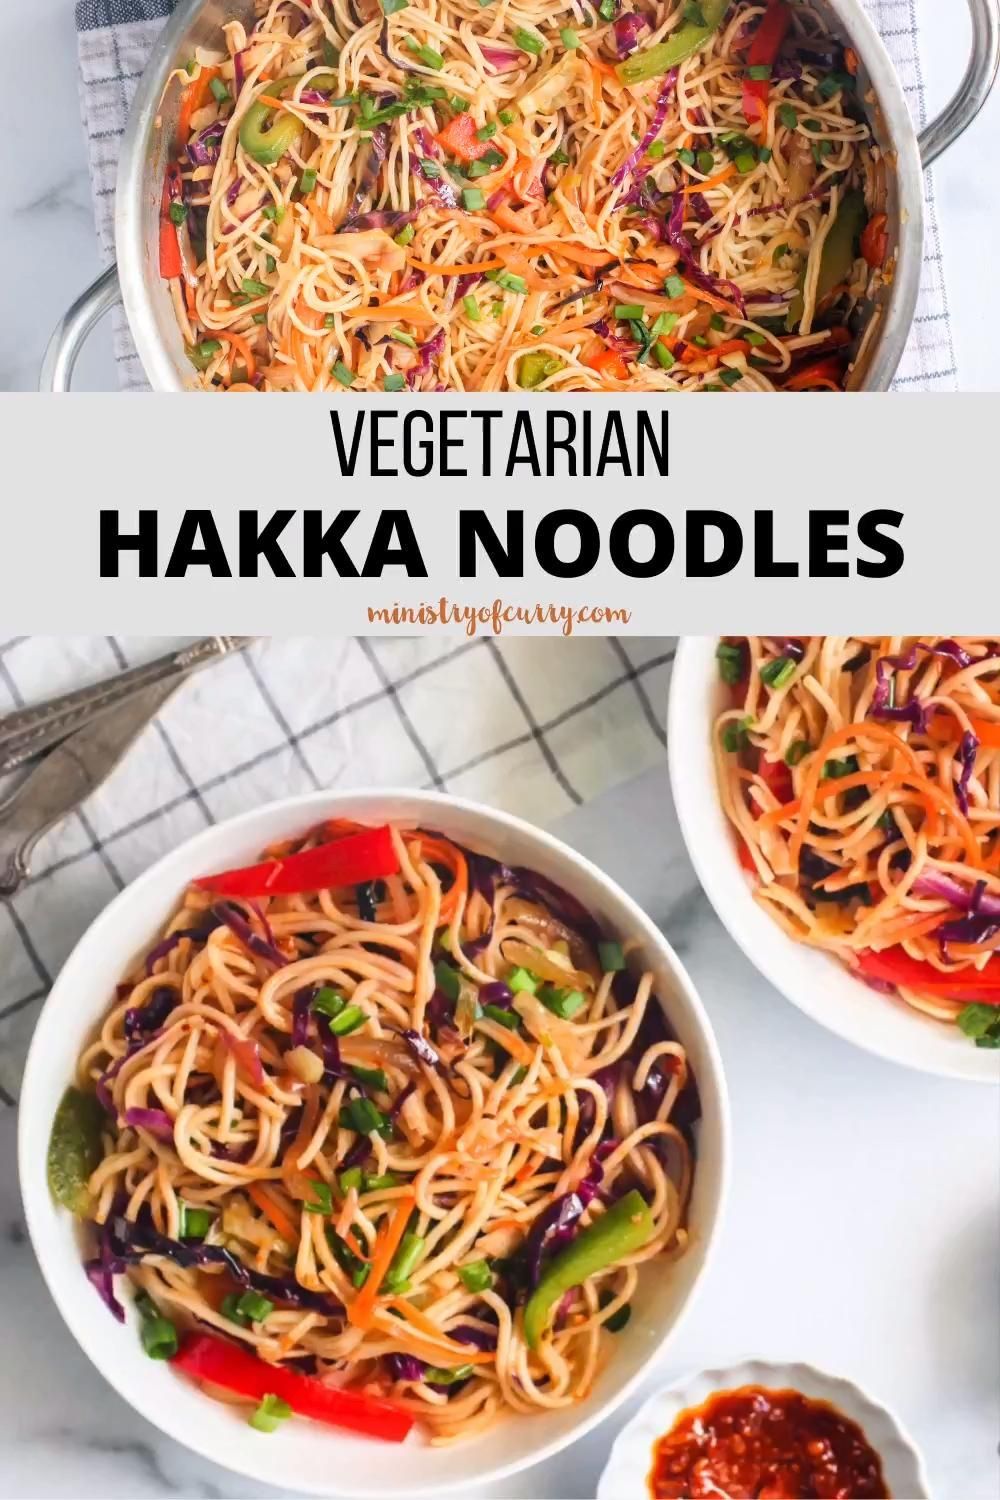 Hakka Noodles -   19 dinner recipes for family vegetarian ideas